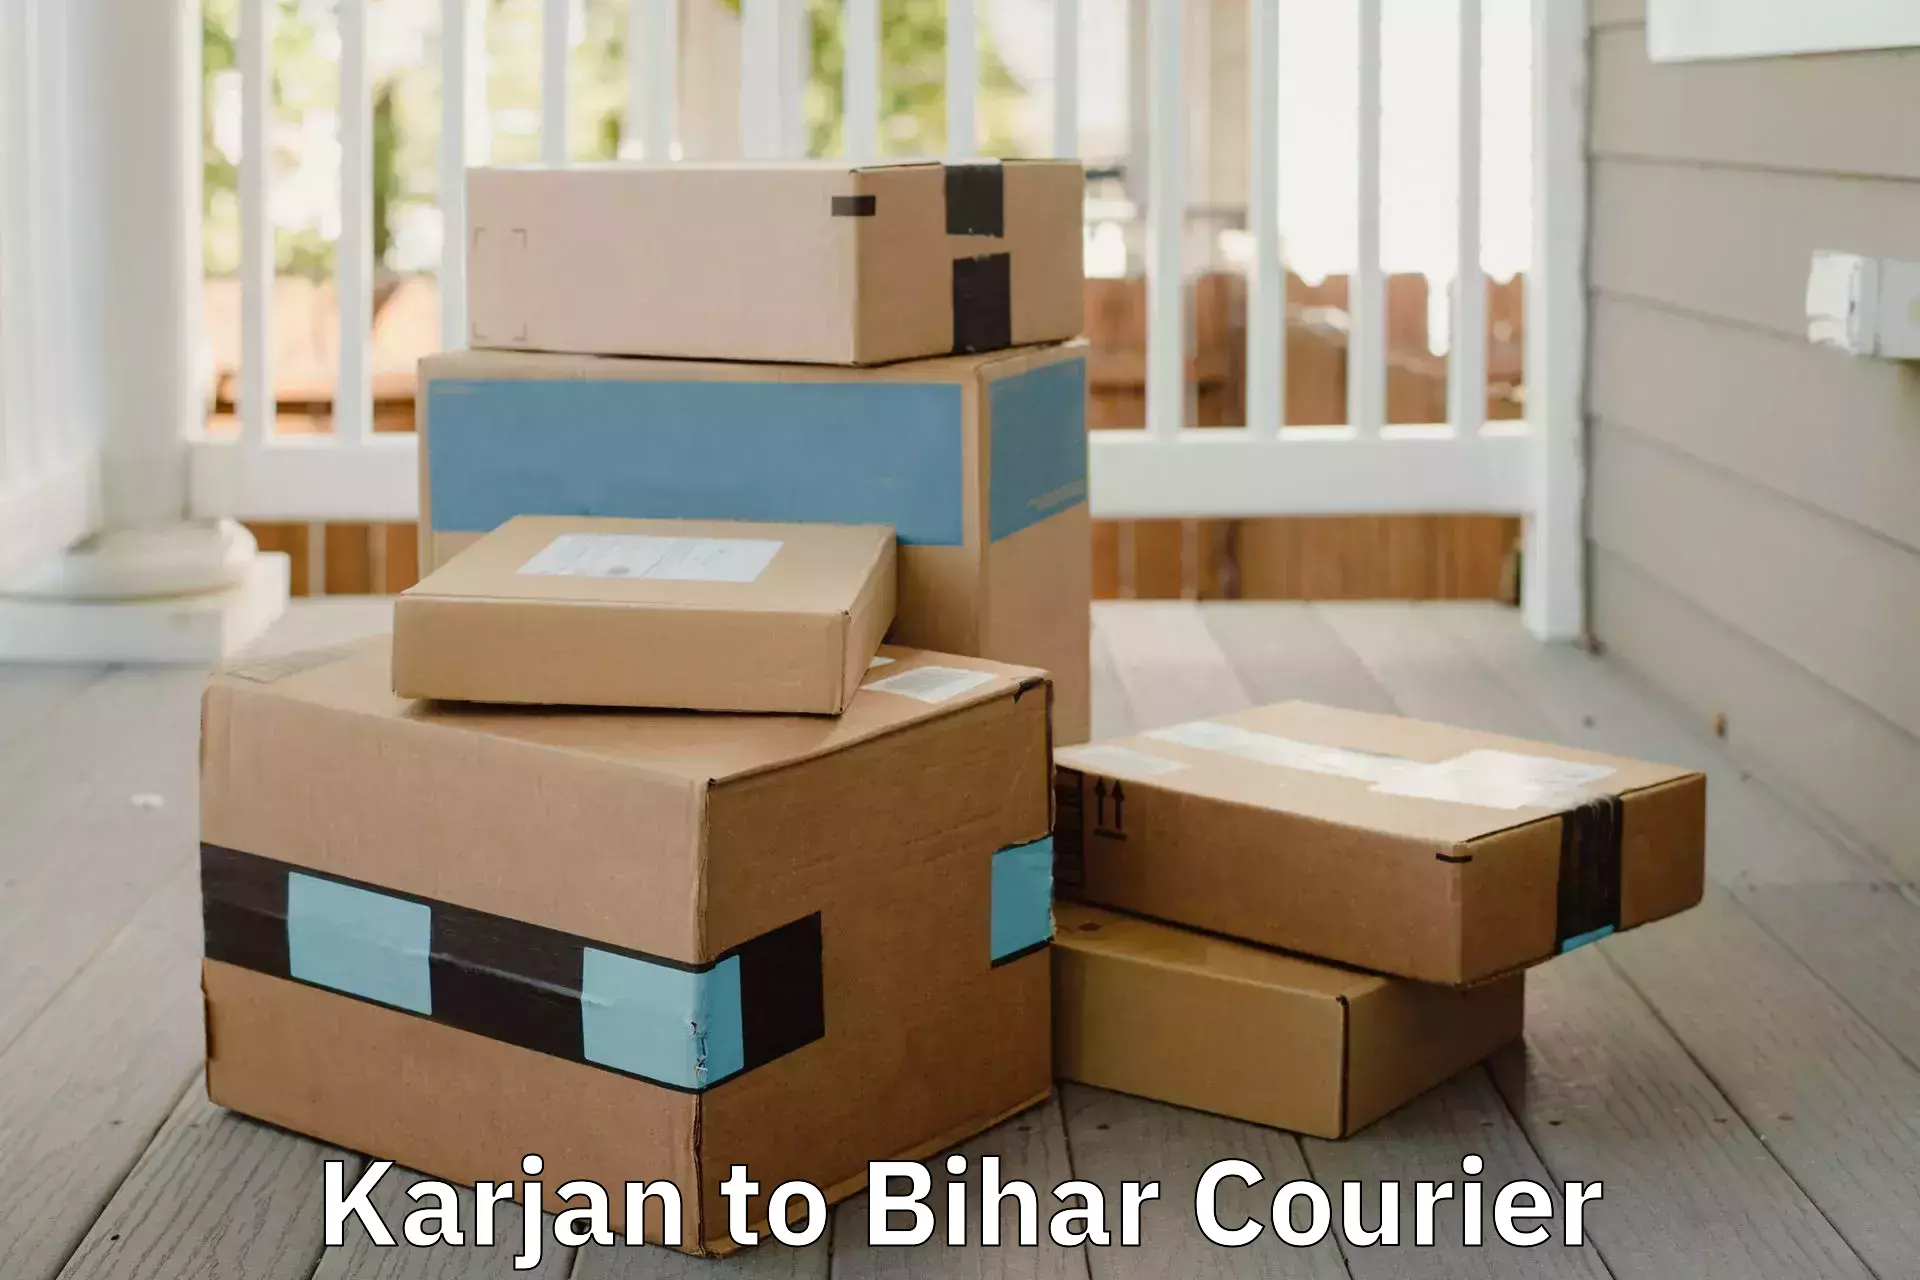 Furniture transport solutions Karjan to Sheohar